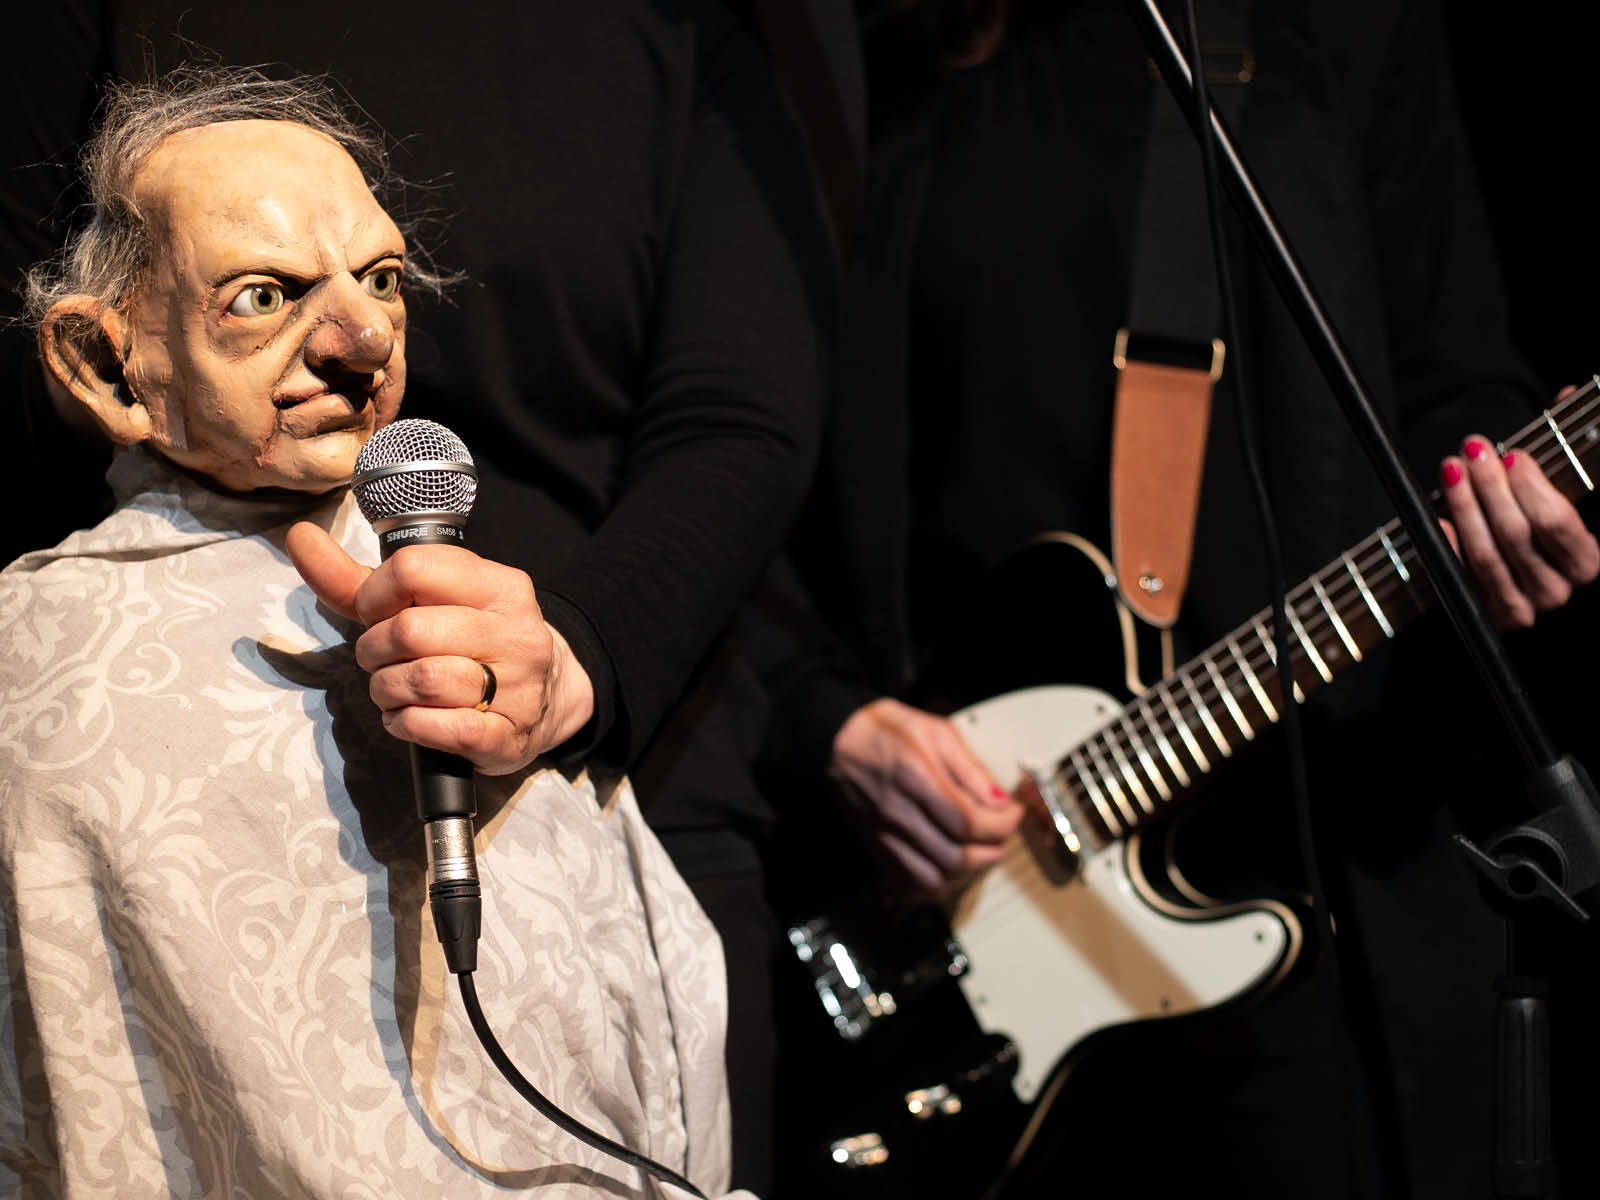 Die Puppe eines alten Mannes mit Halbglatze und tiefen Gesichtsfurchen hält sich ein Mikrofon vors Gesicht. Im Hintergrund spielt eine Person E-Gitarre.